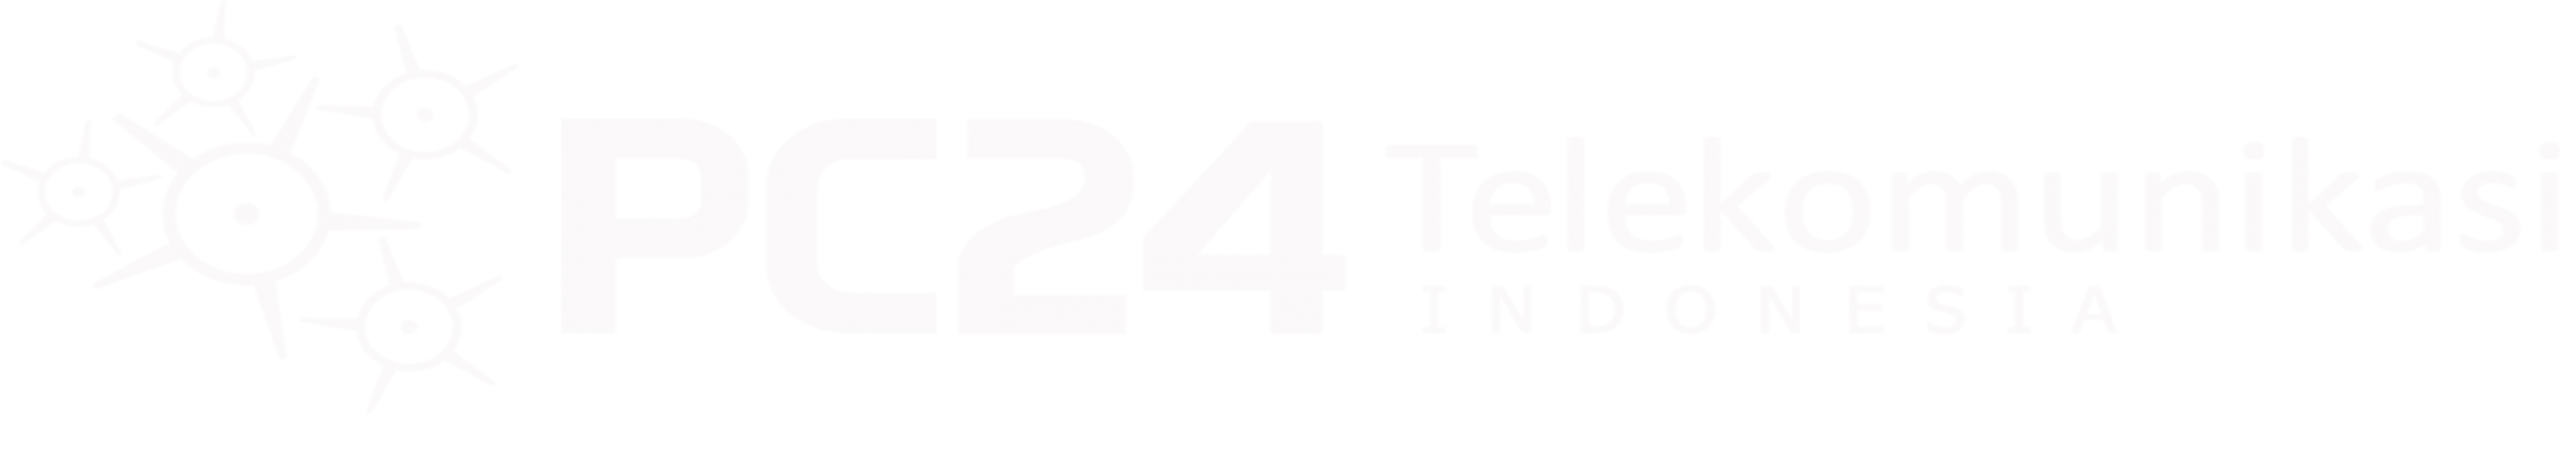 PC24 Telekomunikasi Indonesia